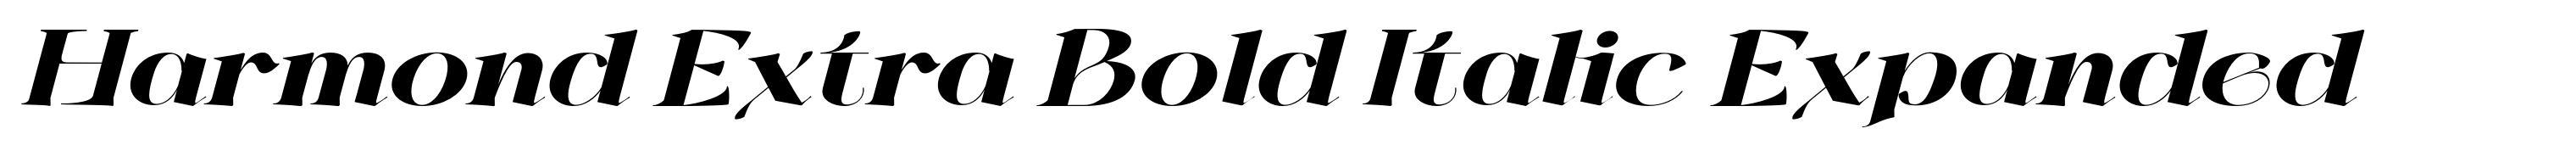 Harmond Extra Bold Italic Expanded